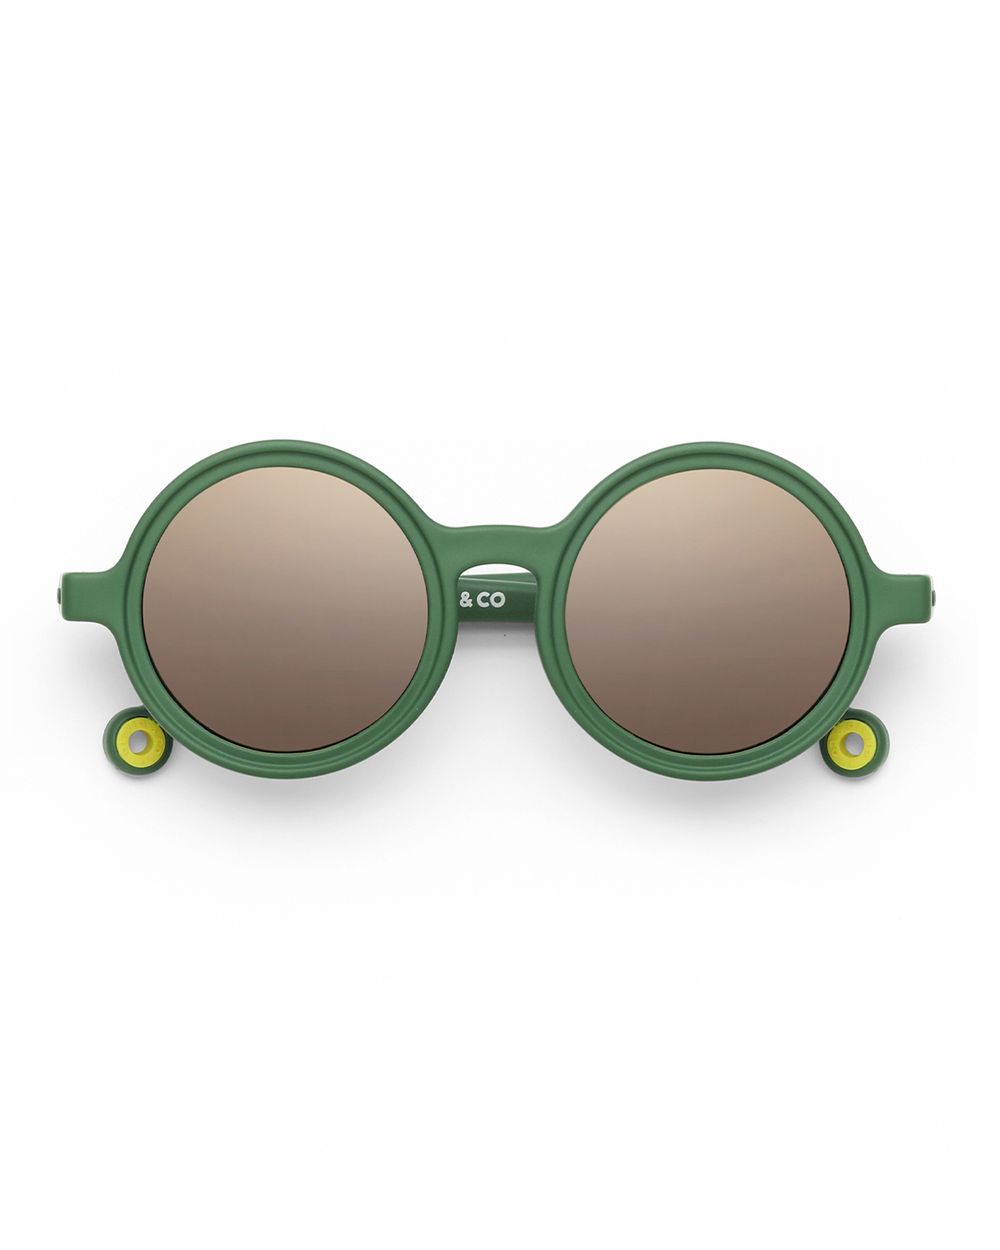 Toddler Round Sunglasses Cactus Green